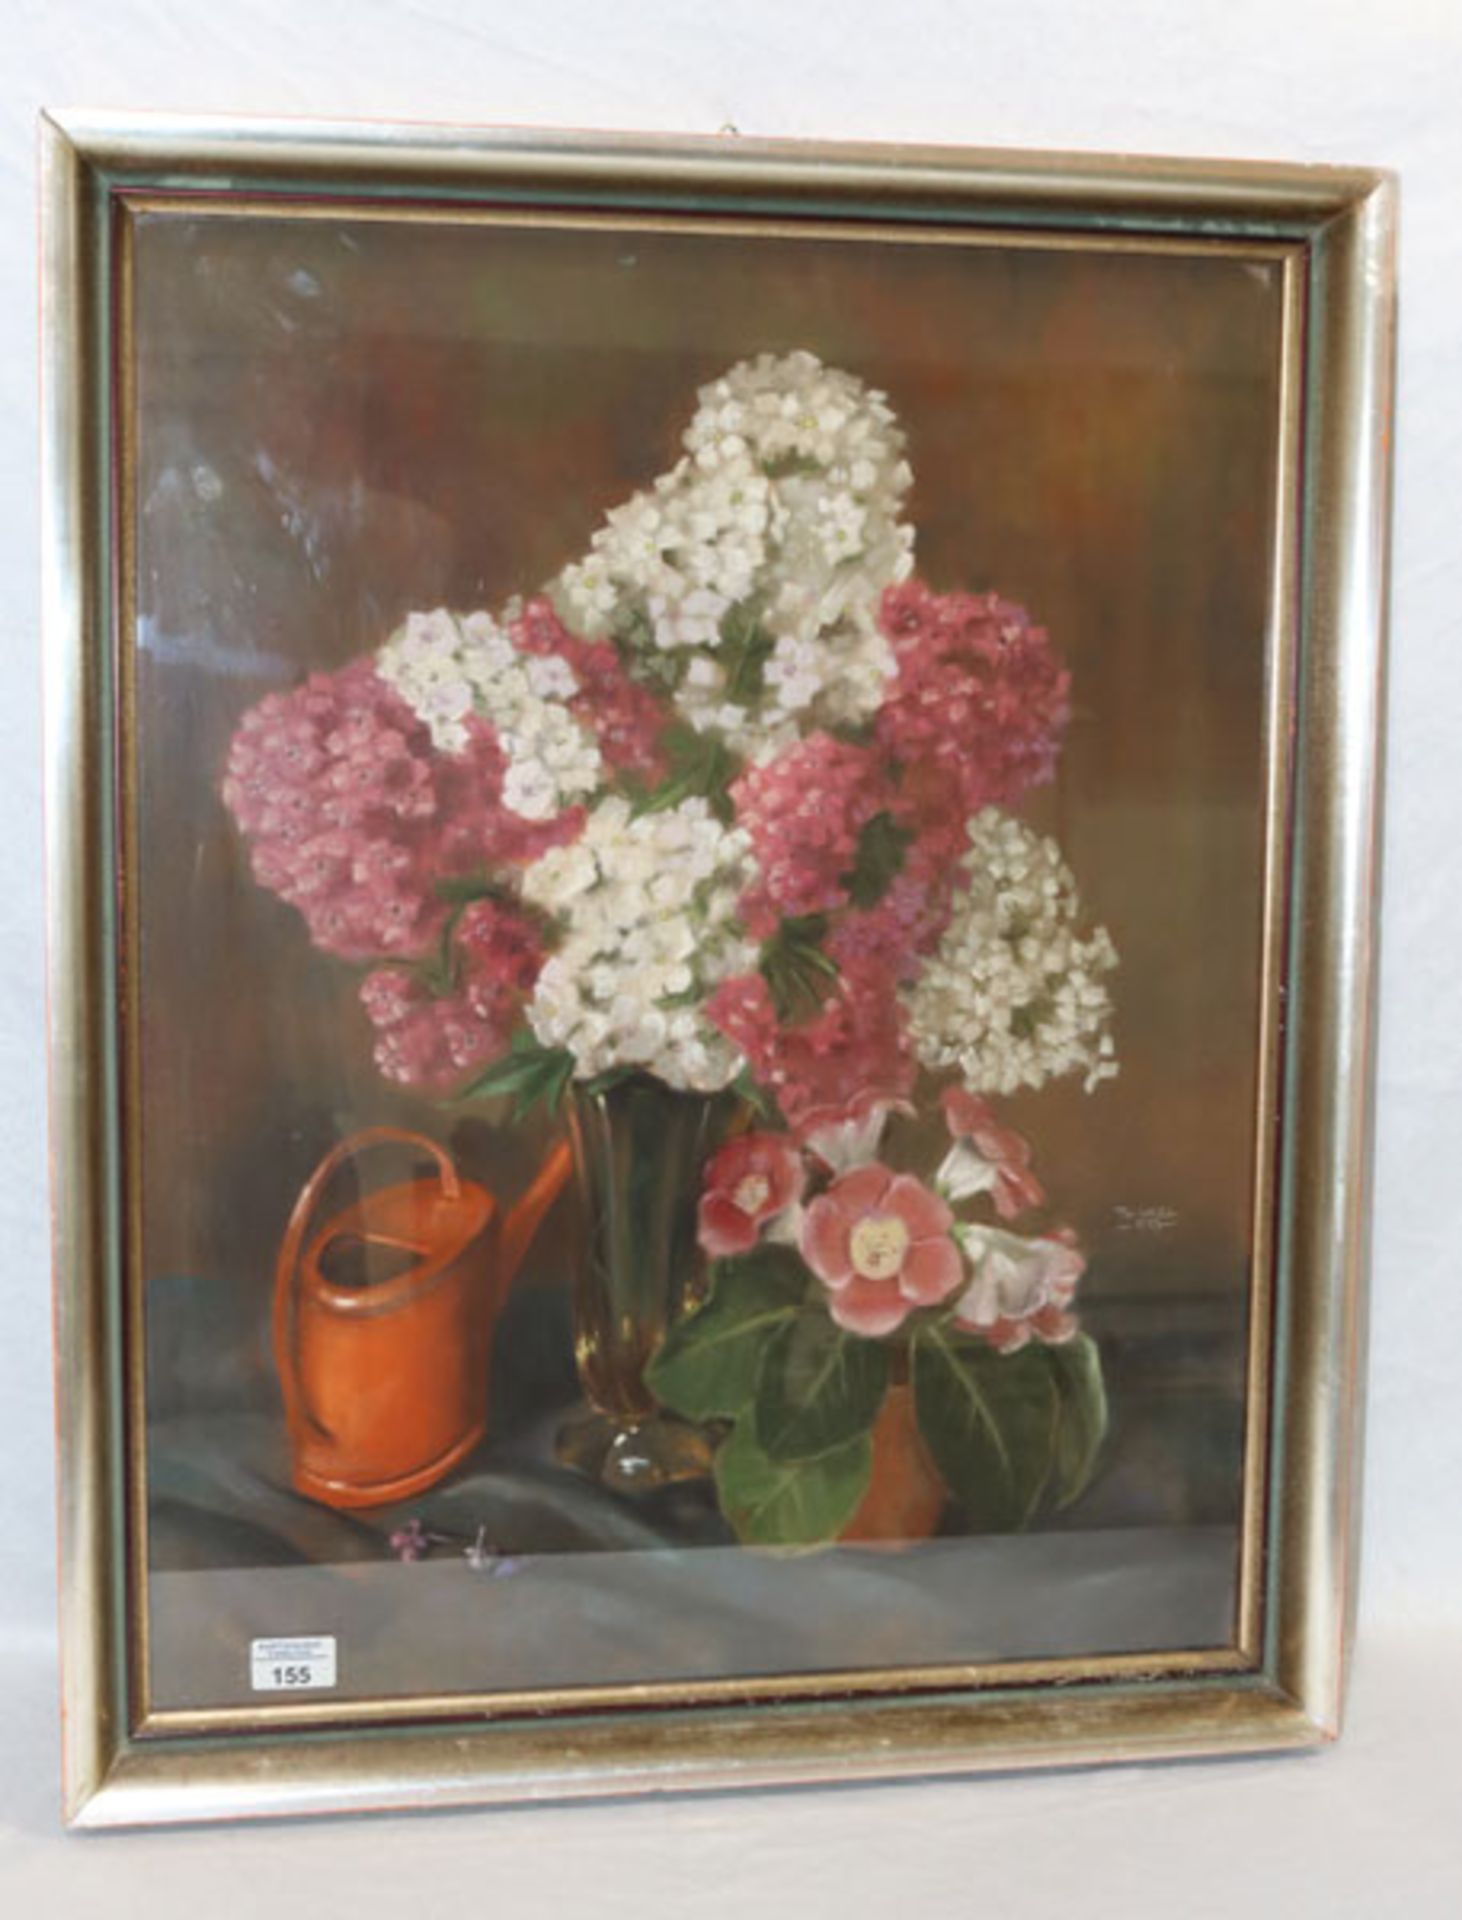 Gemälde Ölkreide 'Blumenstillleben mit Gießkanne', signiert Thanel, 57, unter Glas gerahmt, Rahmen